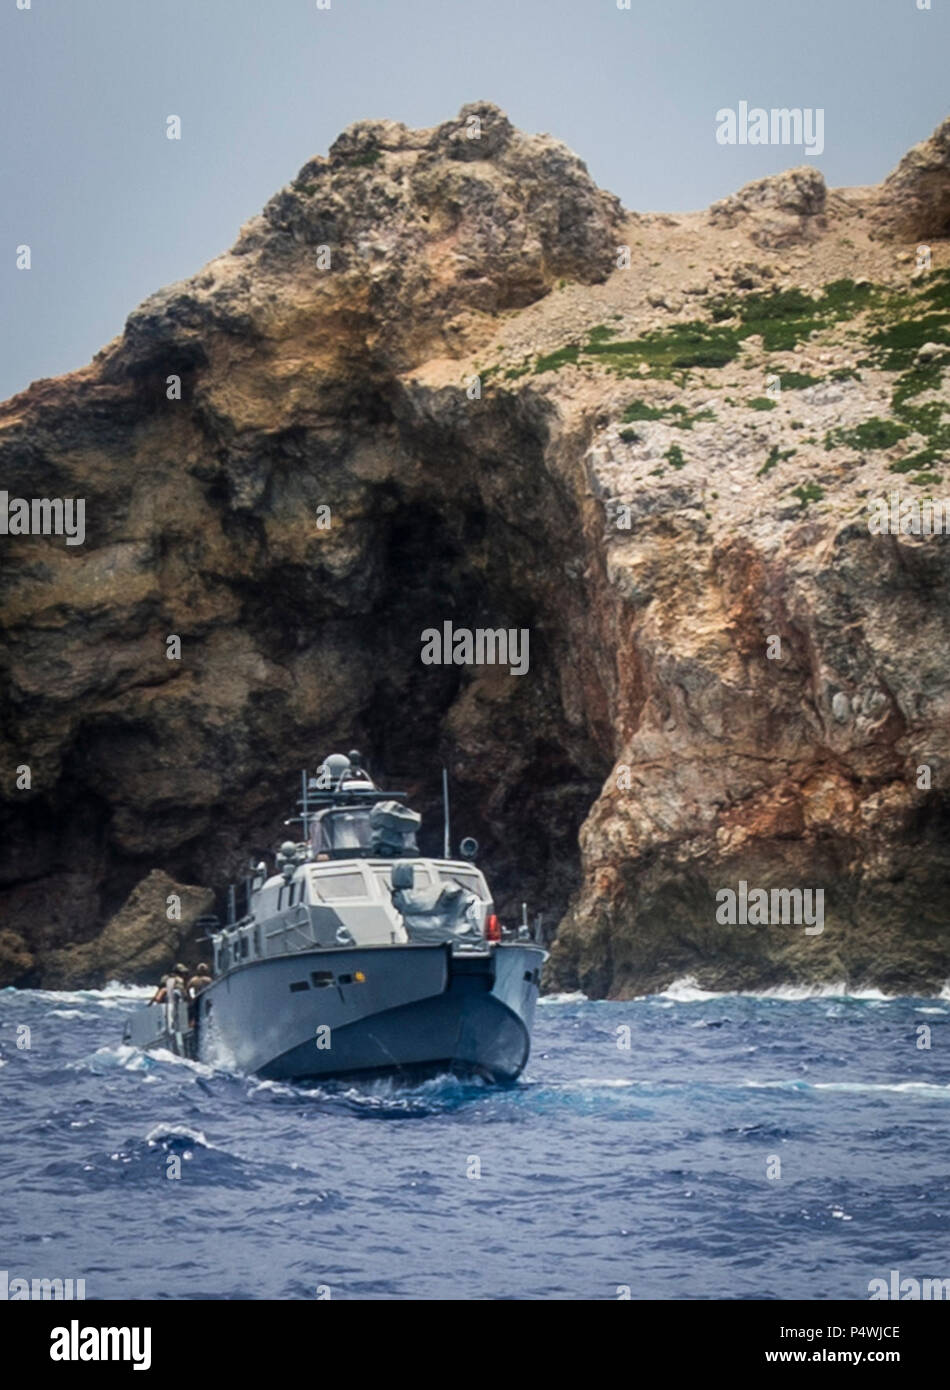 Les marins affectés à l'unité mobile de destruction des engins explosifs (5) 142 EODMU5 peloton et fluviales côtières Groupe 1 pratique du détachement de déminage du port de Guam en utilisant les techniques des véhicules sous-marins téléguidés déployée à partir d'un MK VI le bateau de patrouille dans l'océan Pacifique le 10 mai 2017. EODMU5 est actuellement en train de tester sa capacité à déployer des actifs de différentes plates-formes, y compris des hélicoptères et des bateaux de patrouille, d'augmenter son interopérabilité adaptative. EODMU5 mène la lutte contre les mines, engins explosifs improvisés, les opérations de sécurité rend les dangers d'explosion et désarme explosifs sous-marins comme les mines. Banque D'Images